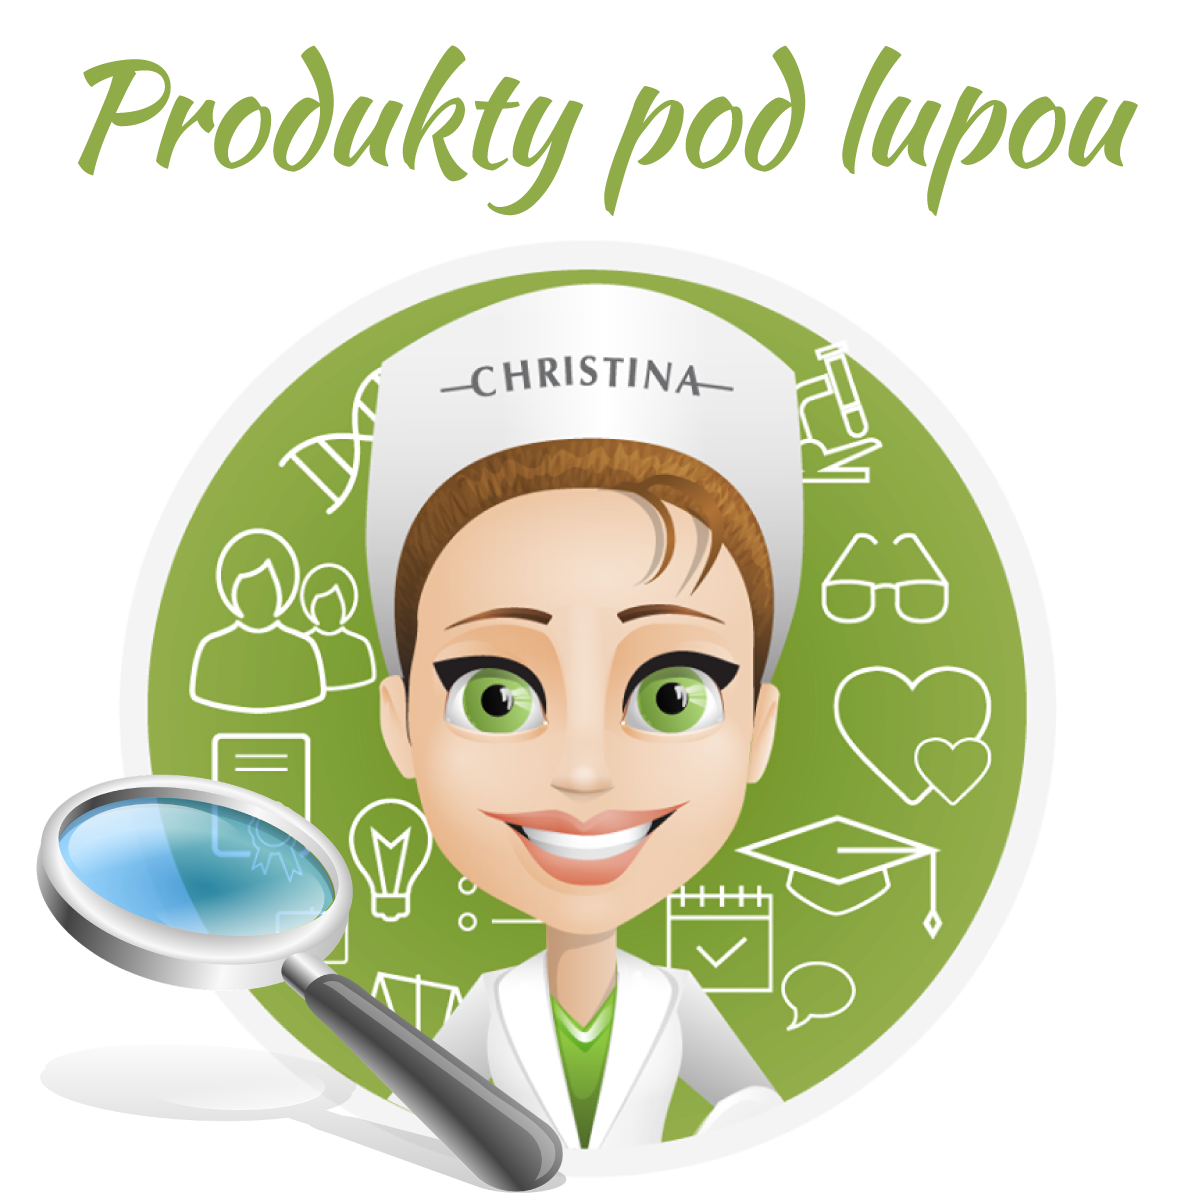 produkty_pod_lupou_1